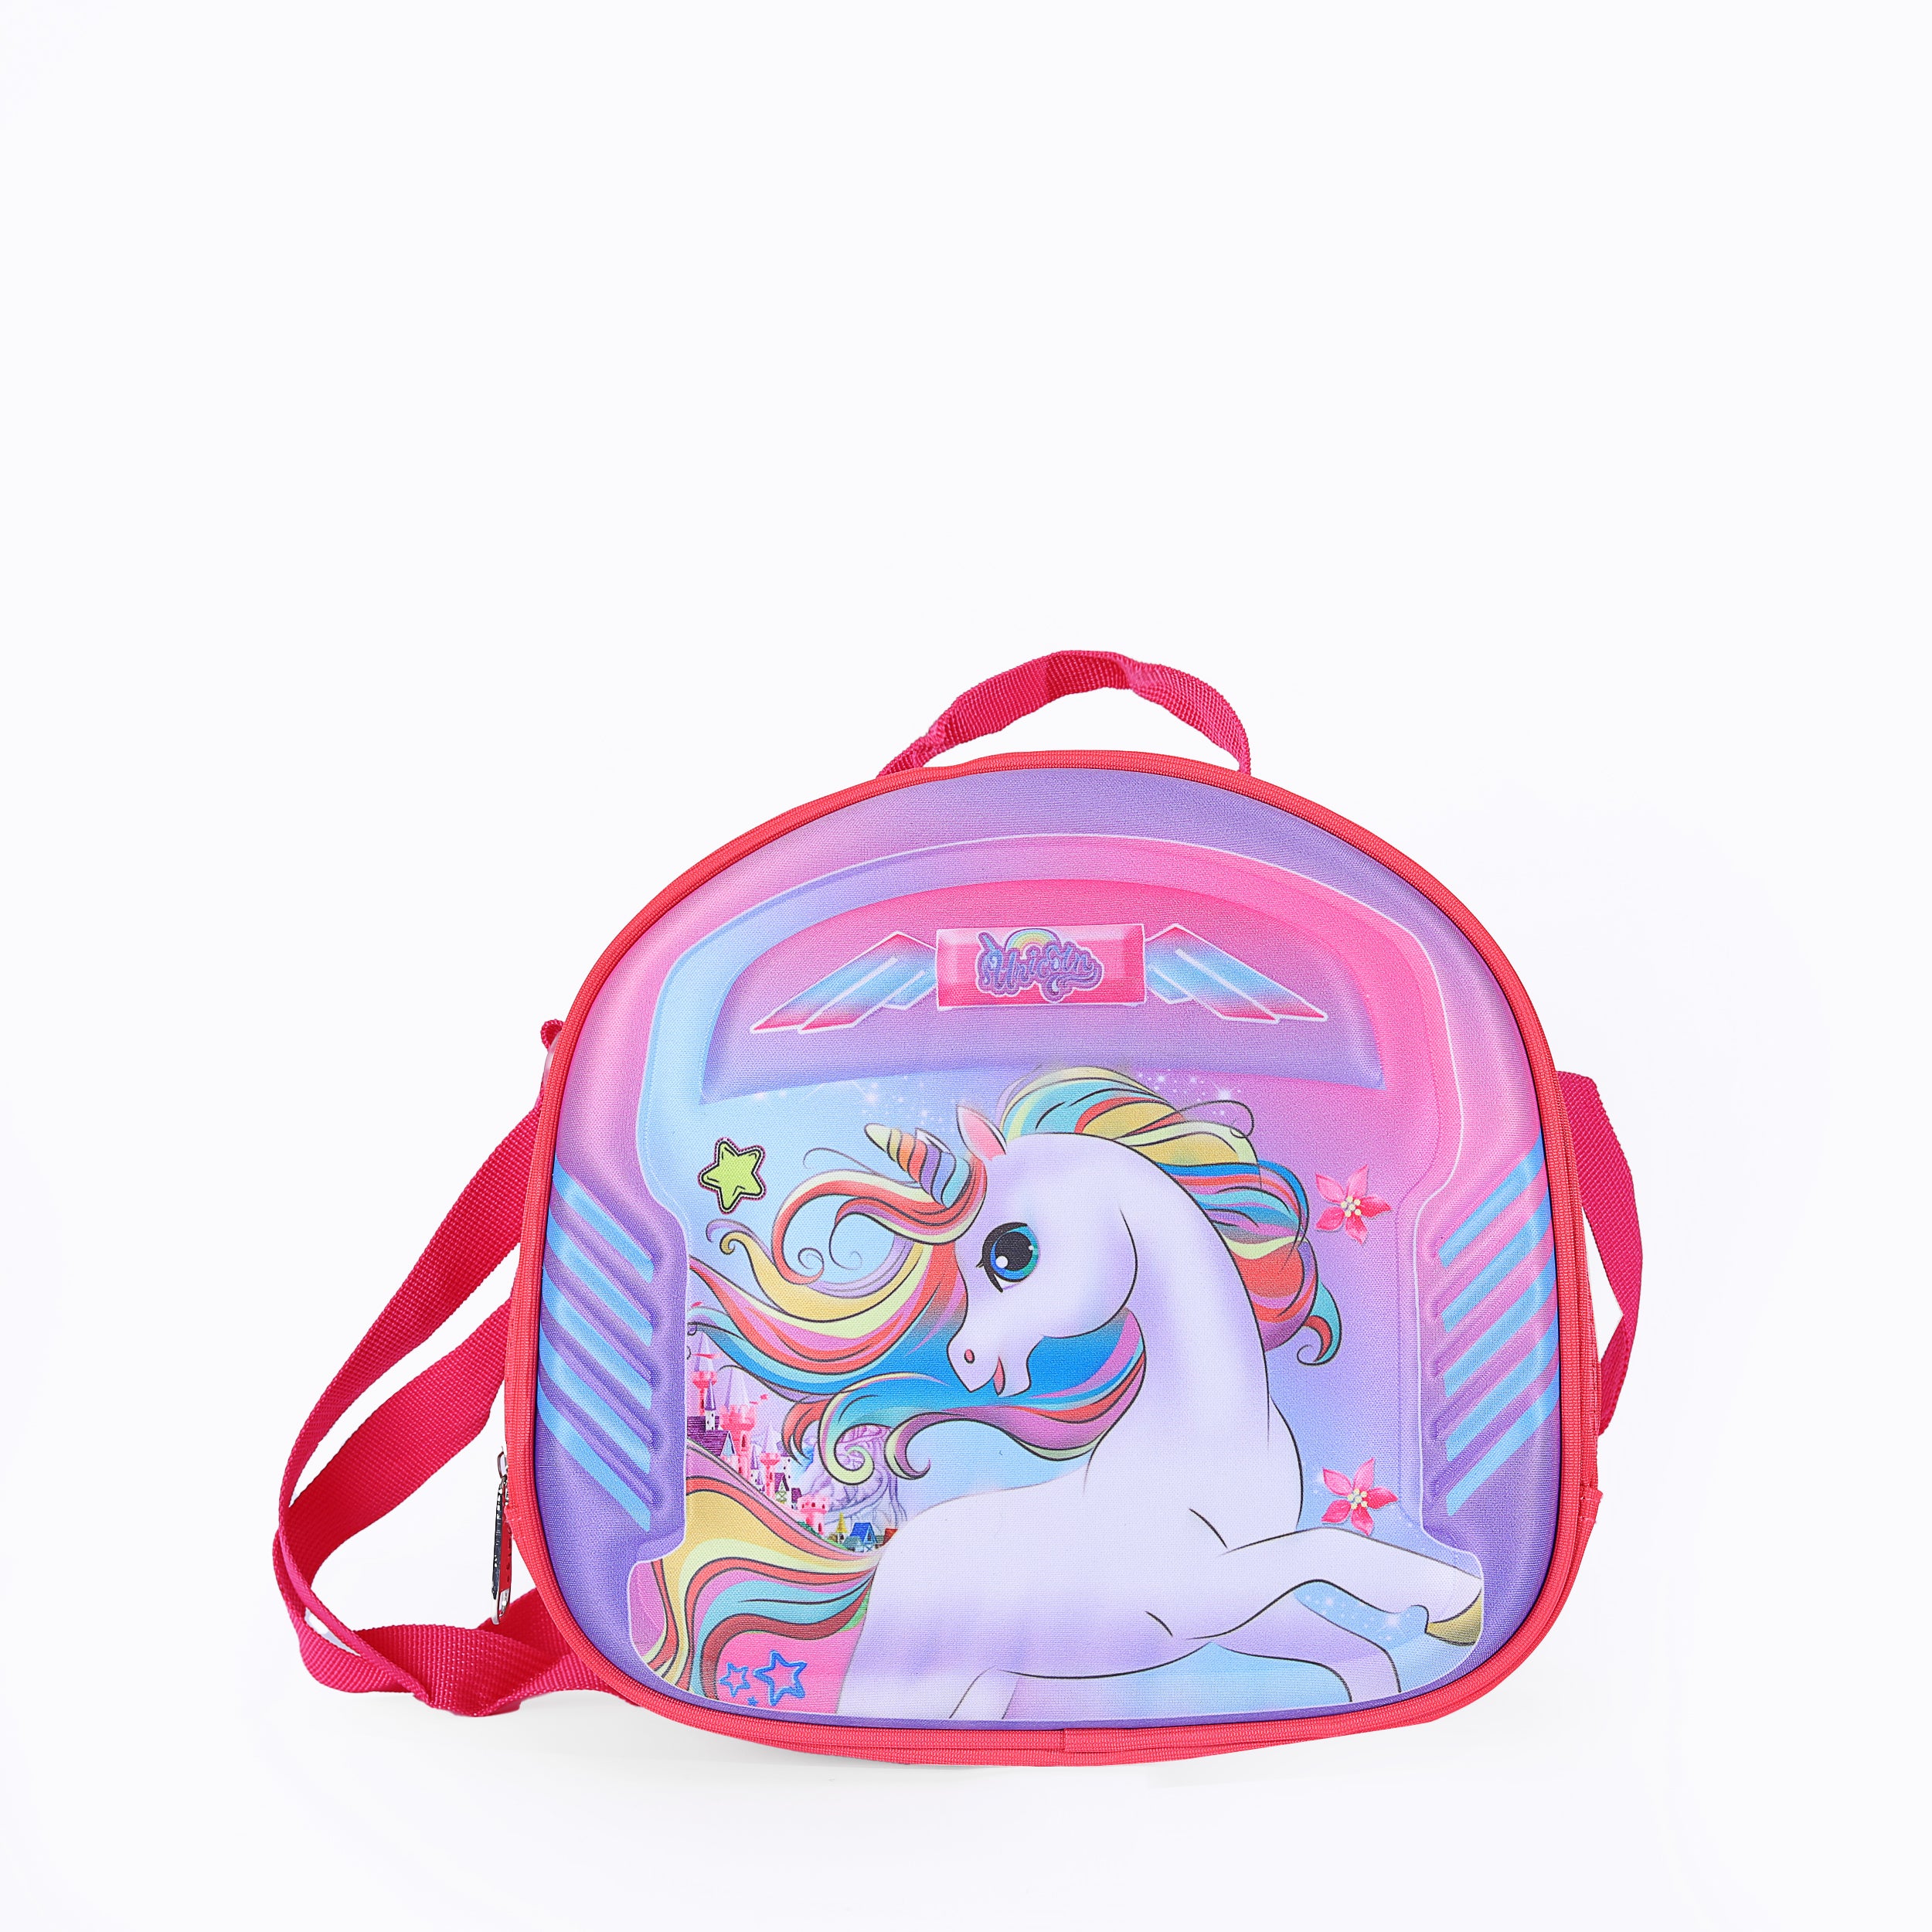 Unicorn II Lunch Bag For Girls